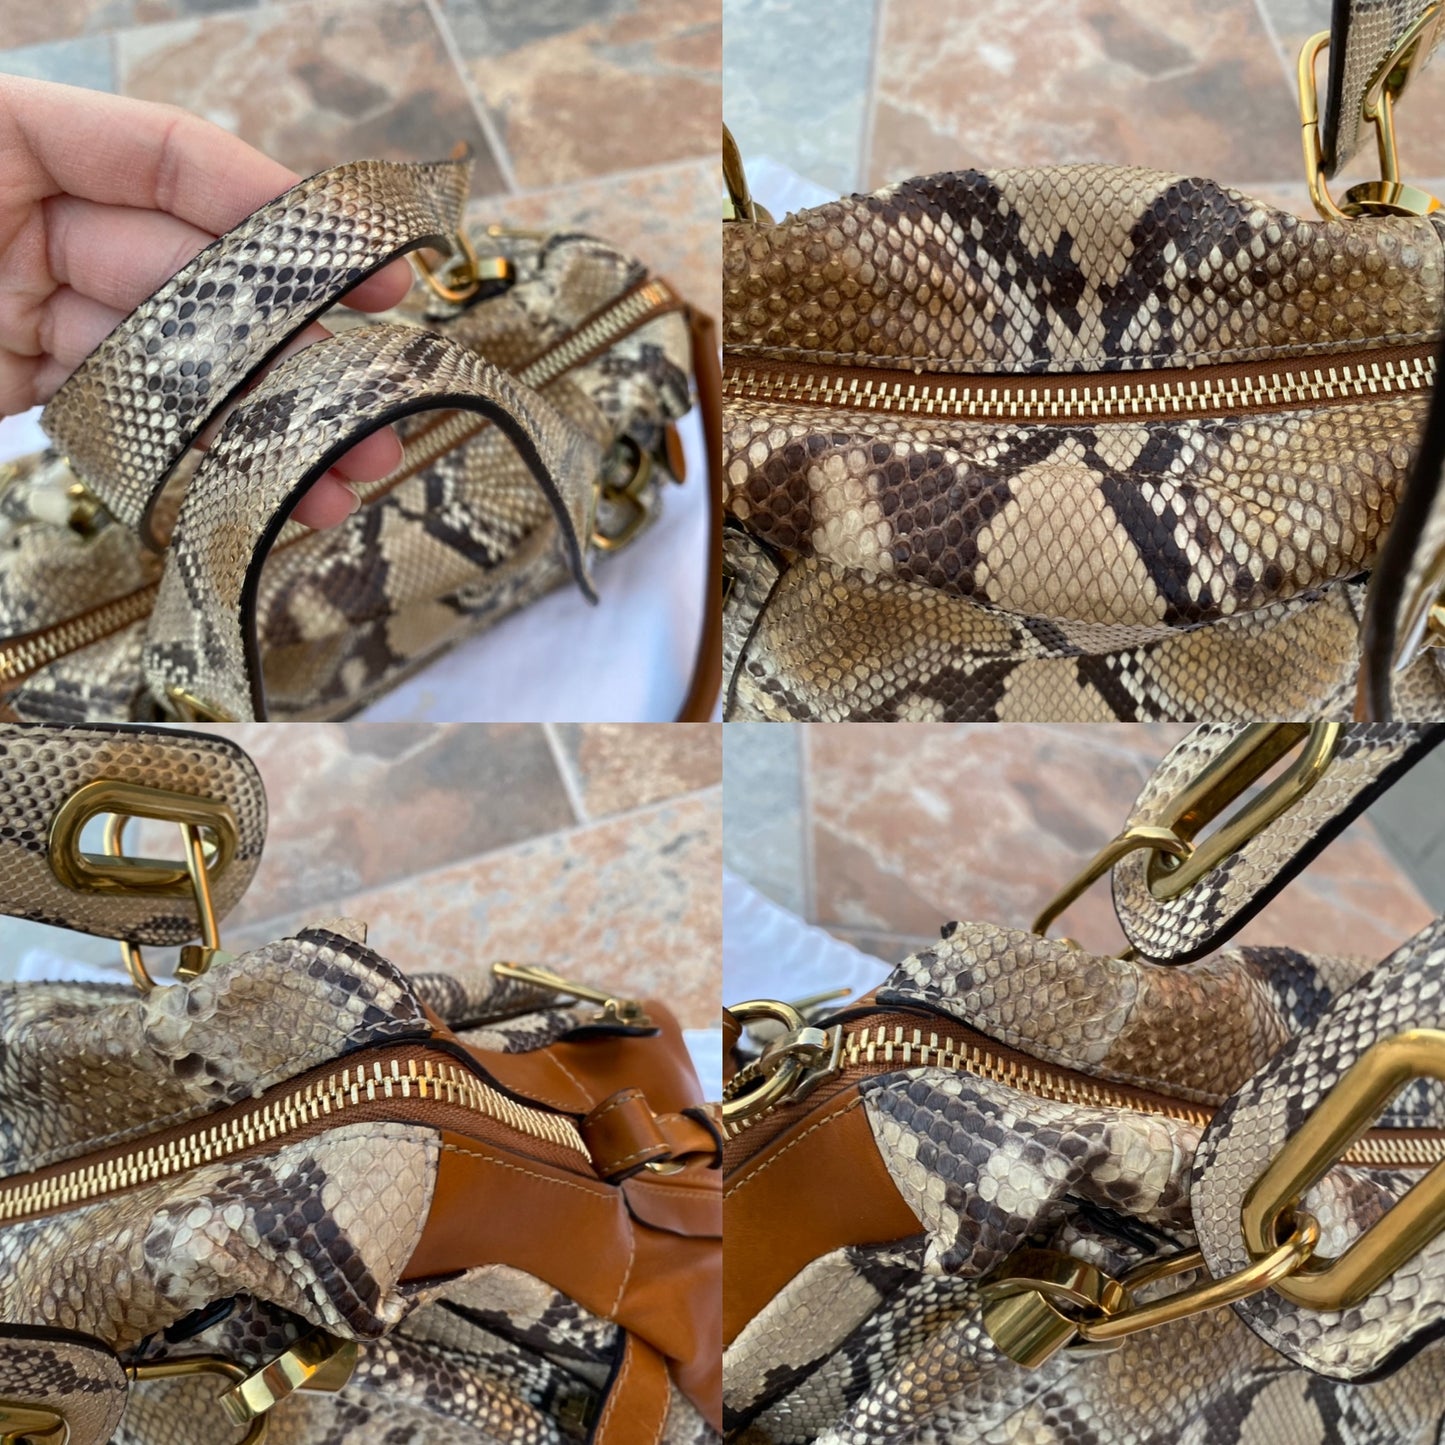 Chloé Paraty Python Dove Shoulder Bag